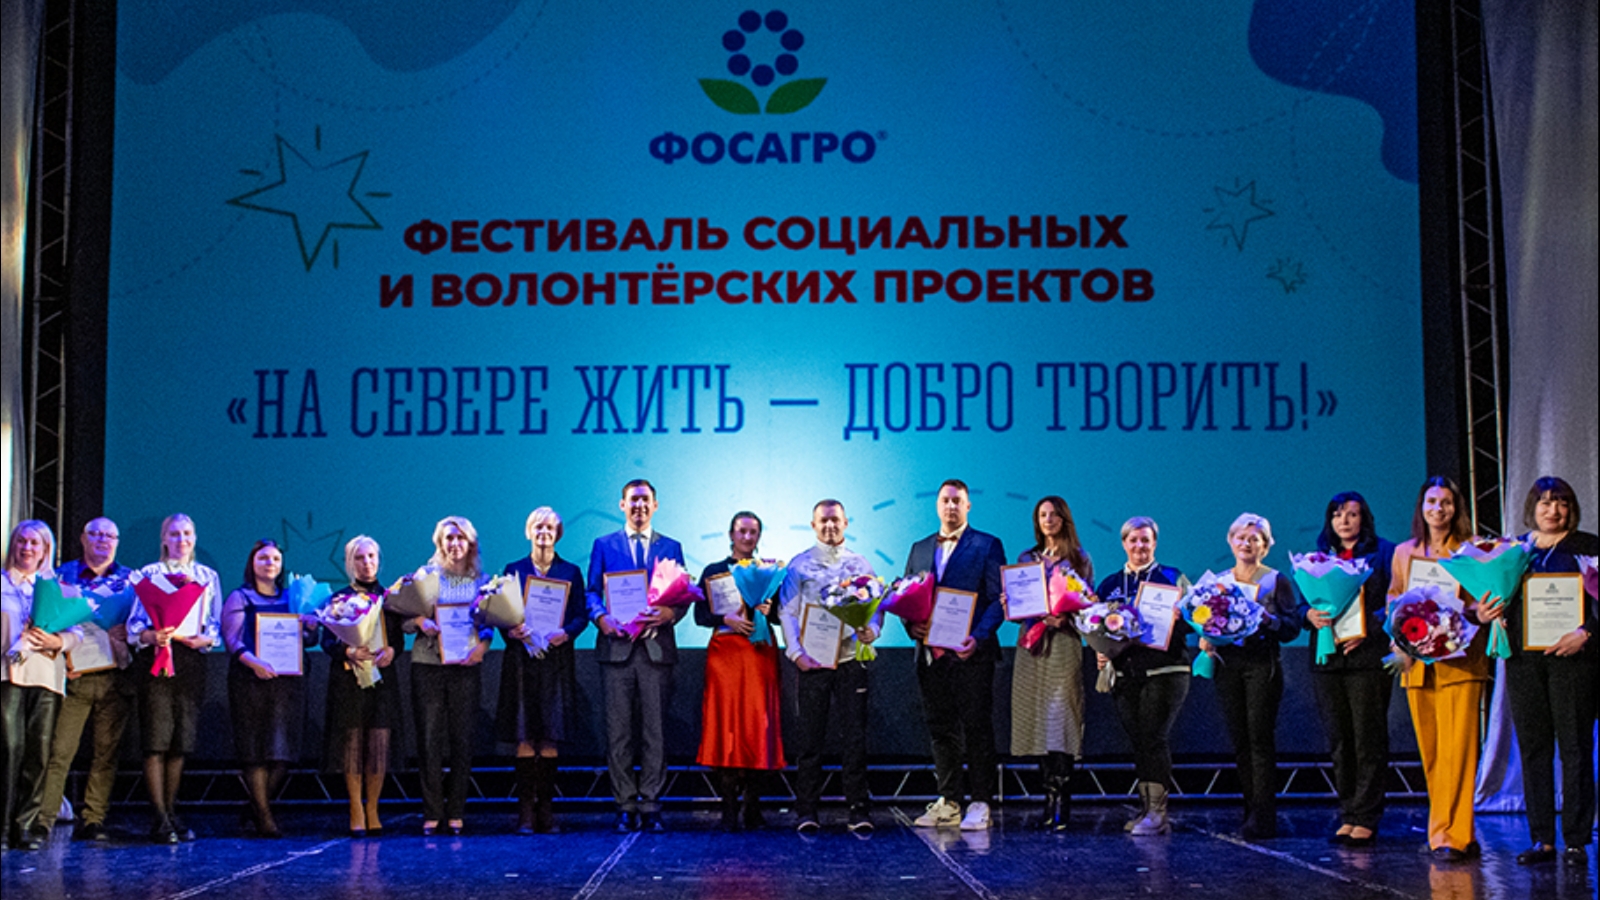 В Кировске состоялся фестиваль социальных и волонтерских проектов компании «ФосАгро»